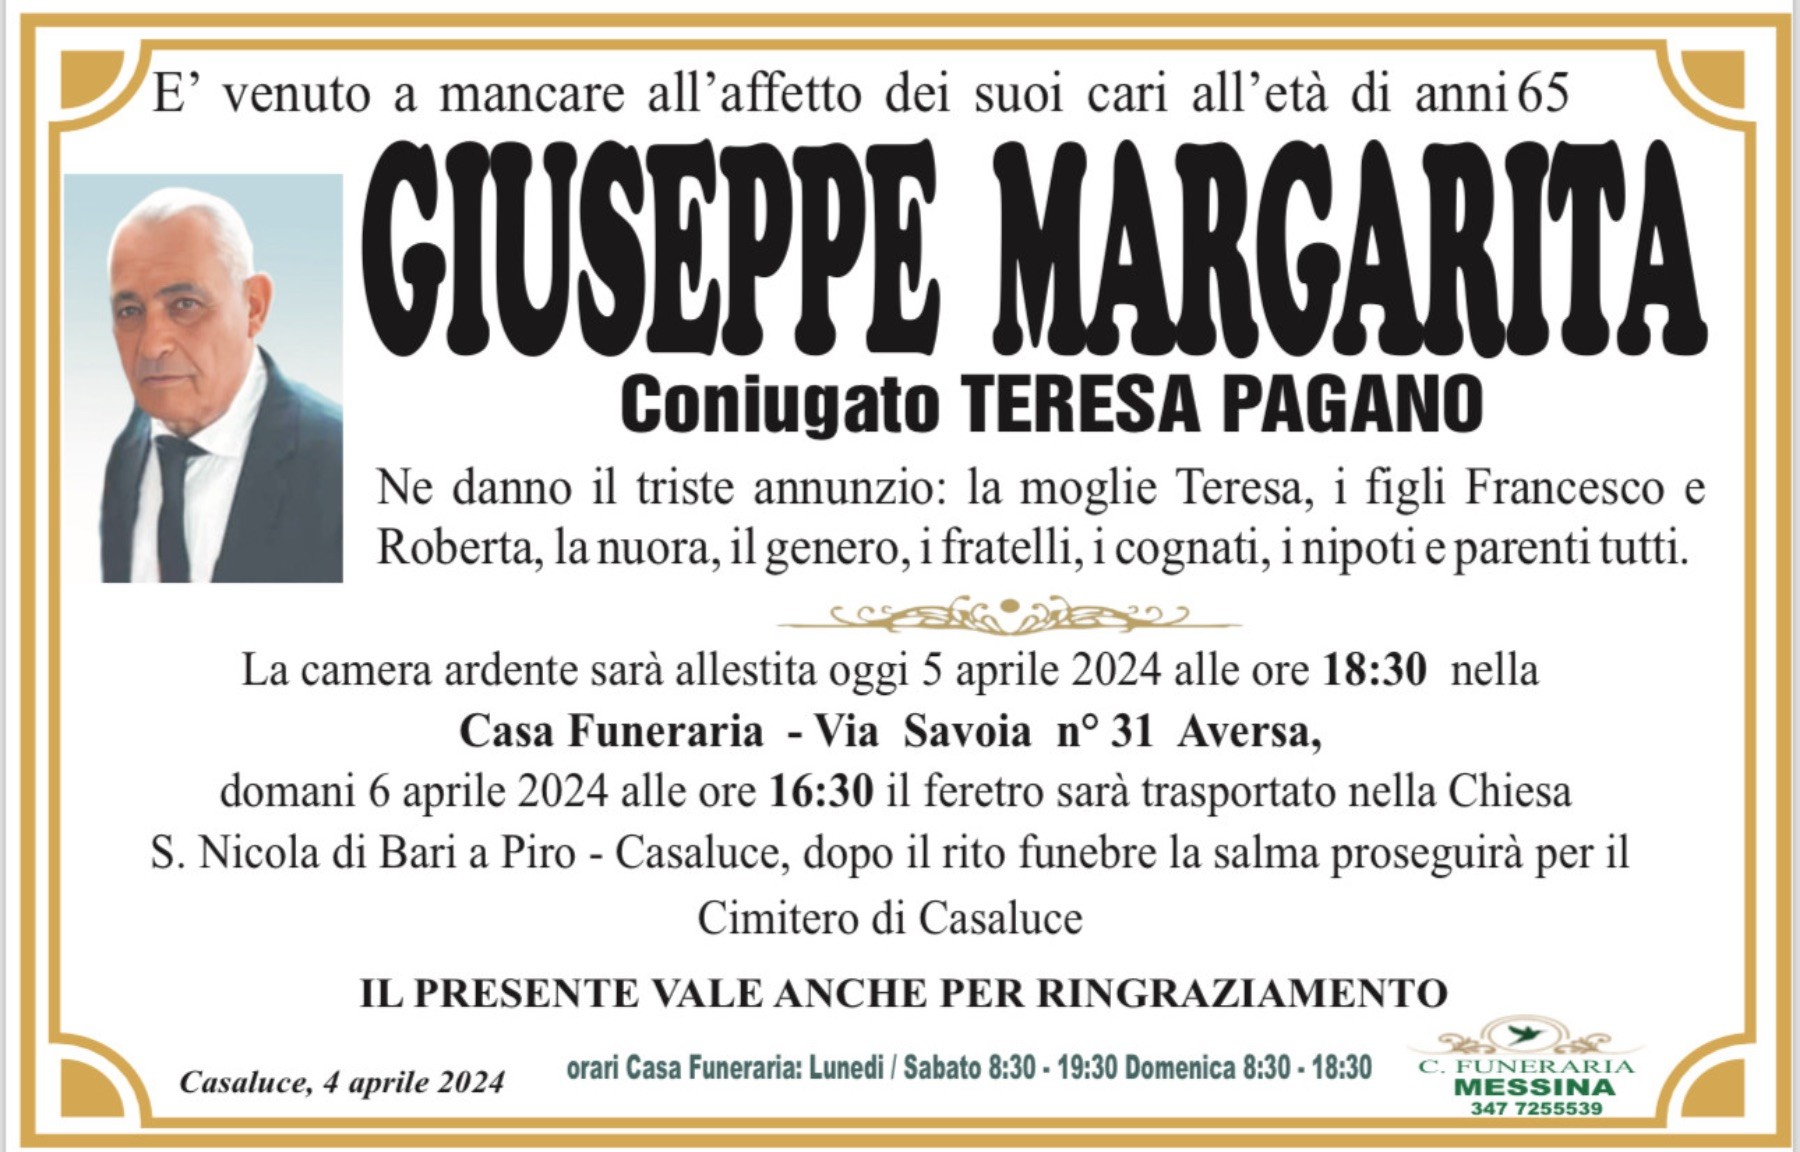 Giuseppe Margarita